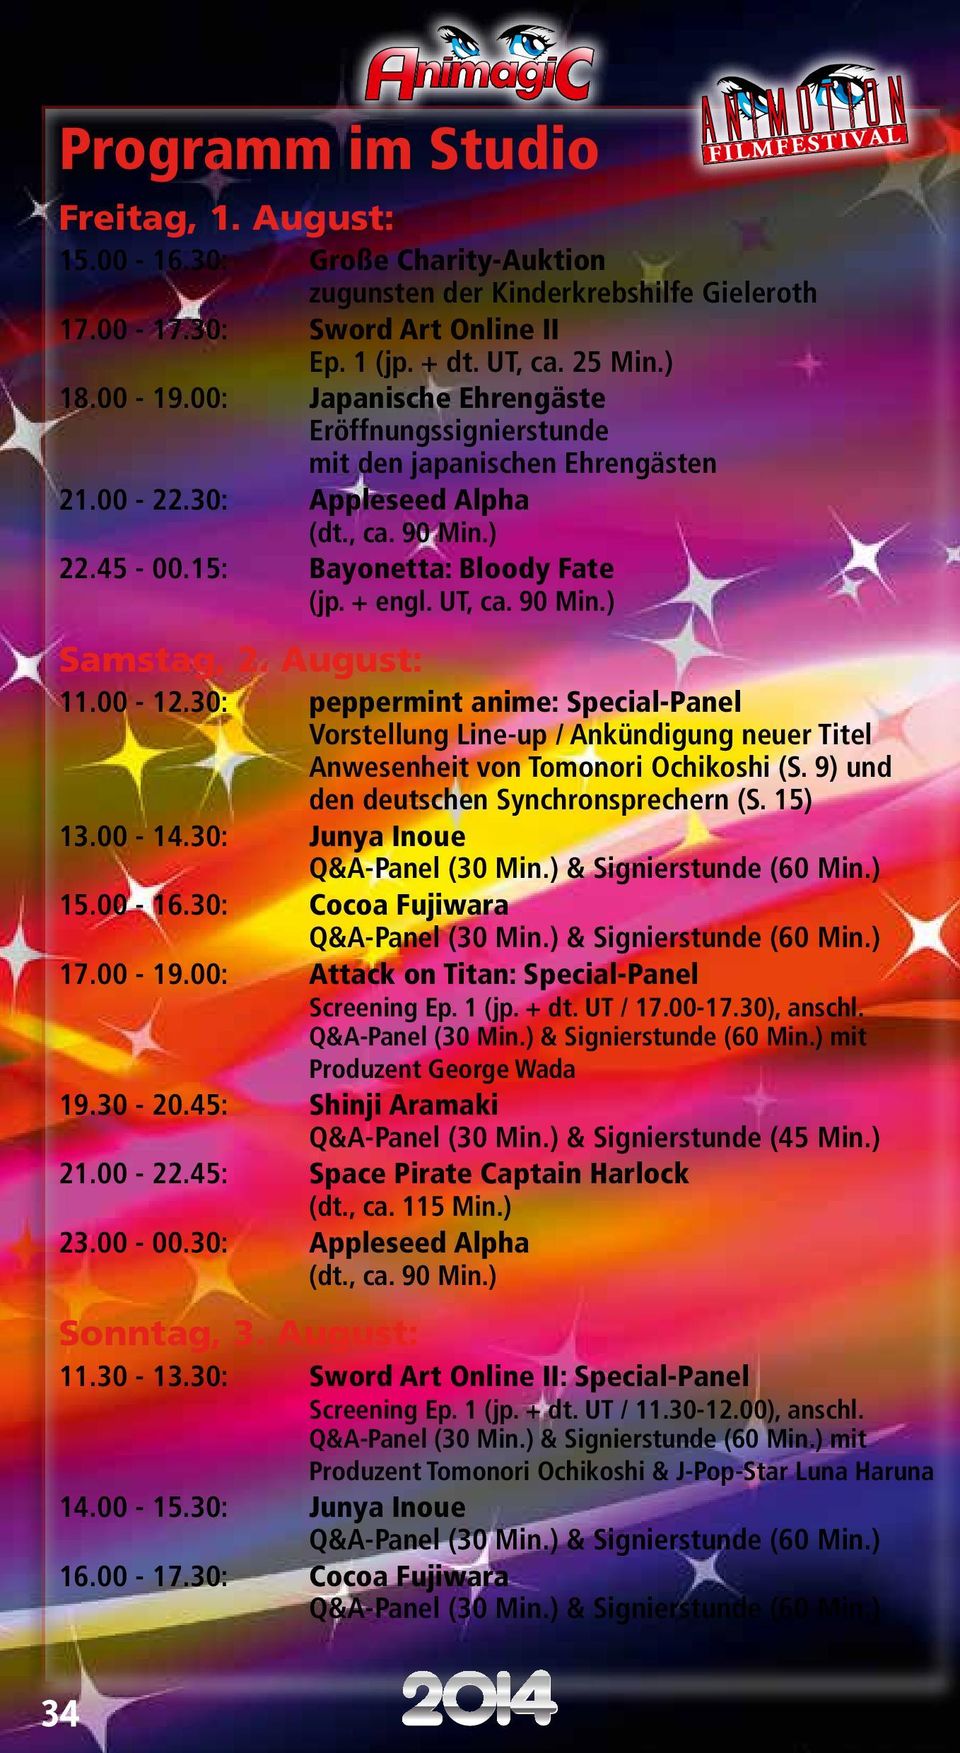 00-12.30: peppermint anime: Special-Panel Vorstellung Line-up / Ankündigung neuer Titel Anwesenheit von Tomonori Ochikoshi (S. 9) und den deutschen Synchronsprechern (S. 15) 13.00-14.